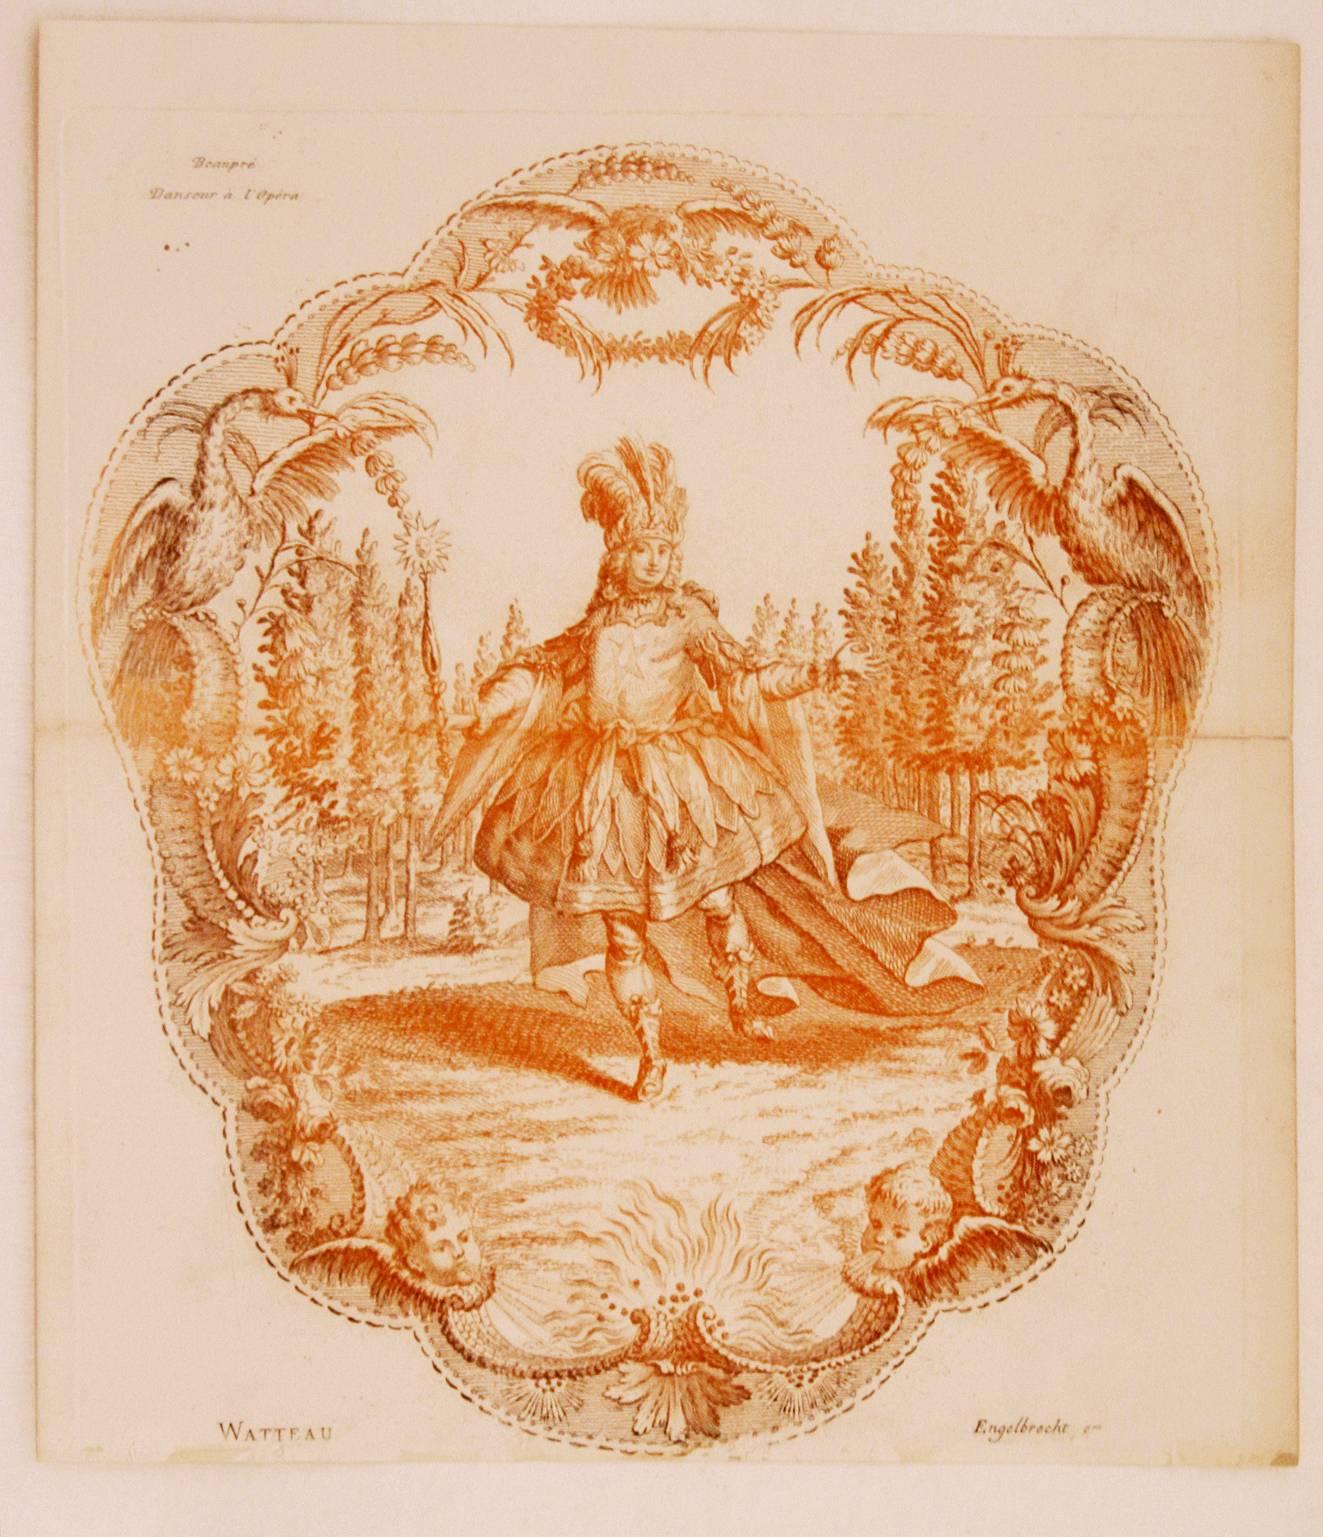  Beaupré,  Danseur à l'Opéra (Beaupré, dancer at the Opera) - Print by Jean-Antoine Watteau